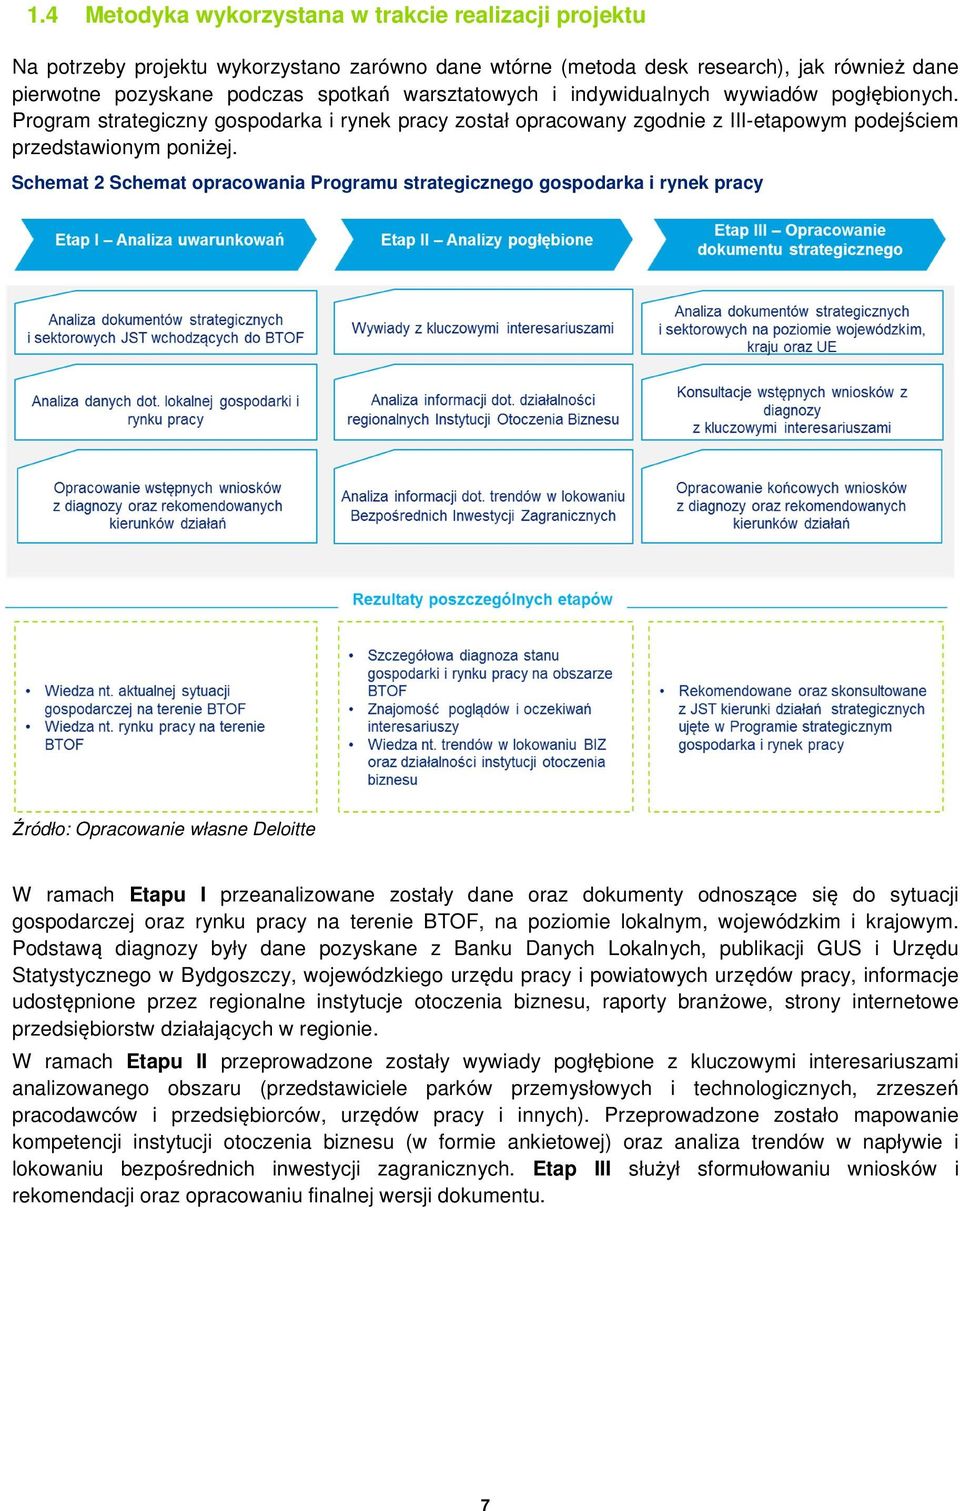 Schemat 2 Schemat opracowania Programu strategicznego gospodarka i rynek pracy Źródło: Opracowanie własne Deloitte W ramach Etapu I przeanalizowane zostały dane oraz dokumenty odnoszące się do